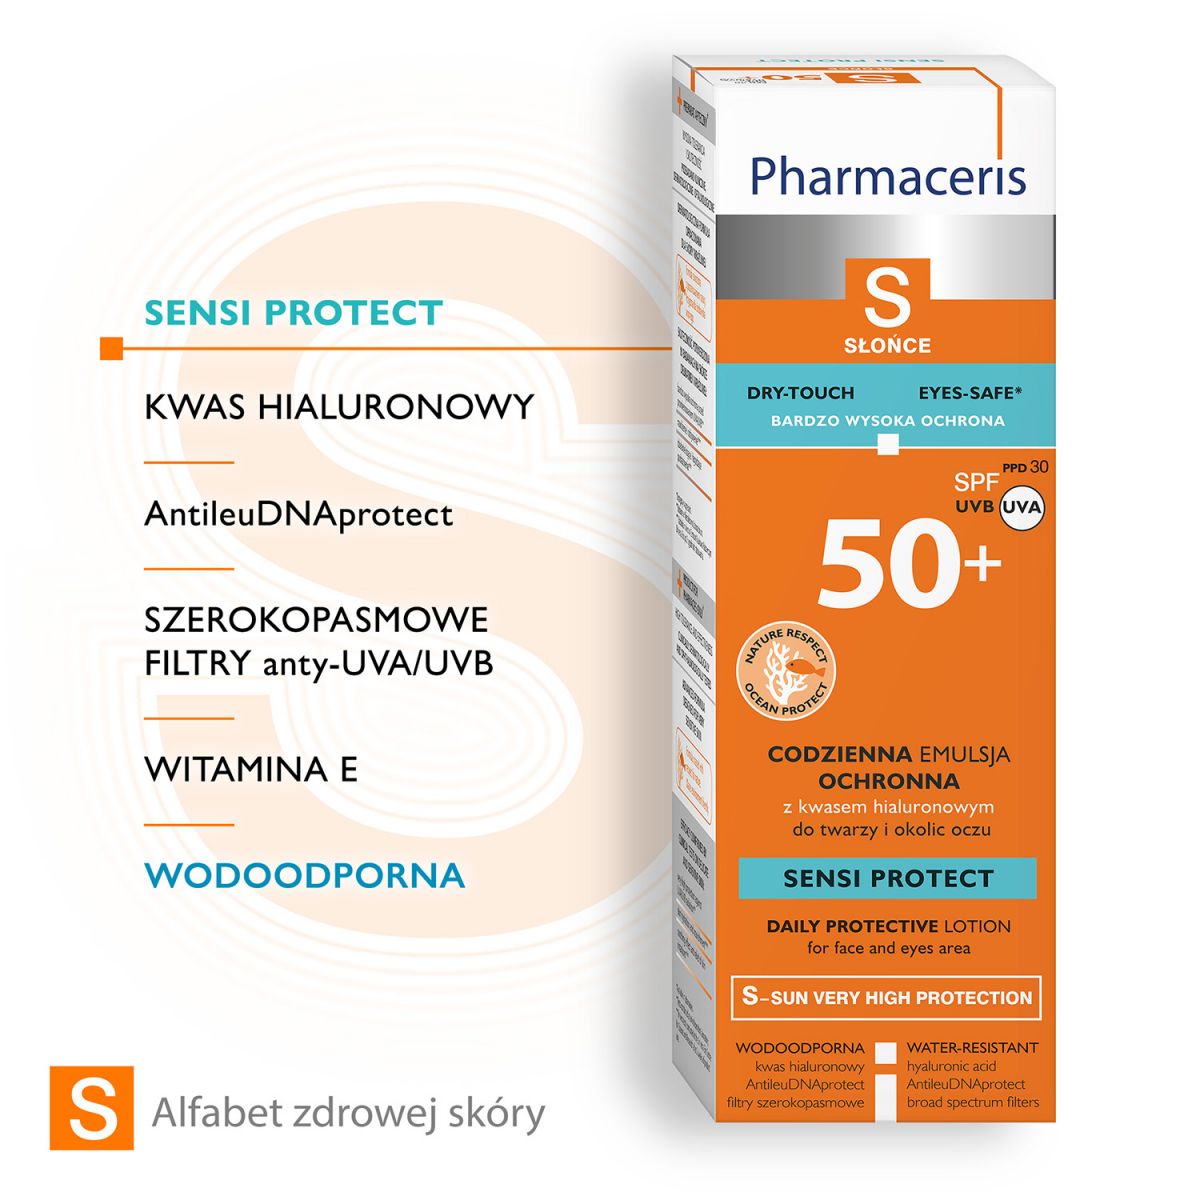 Pharmaceris S SENSI PROTECT  kwas hialuronowy twarz SPF 50+